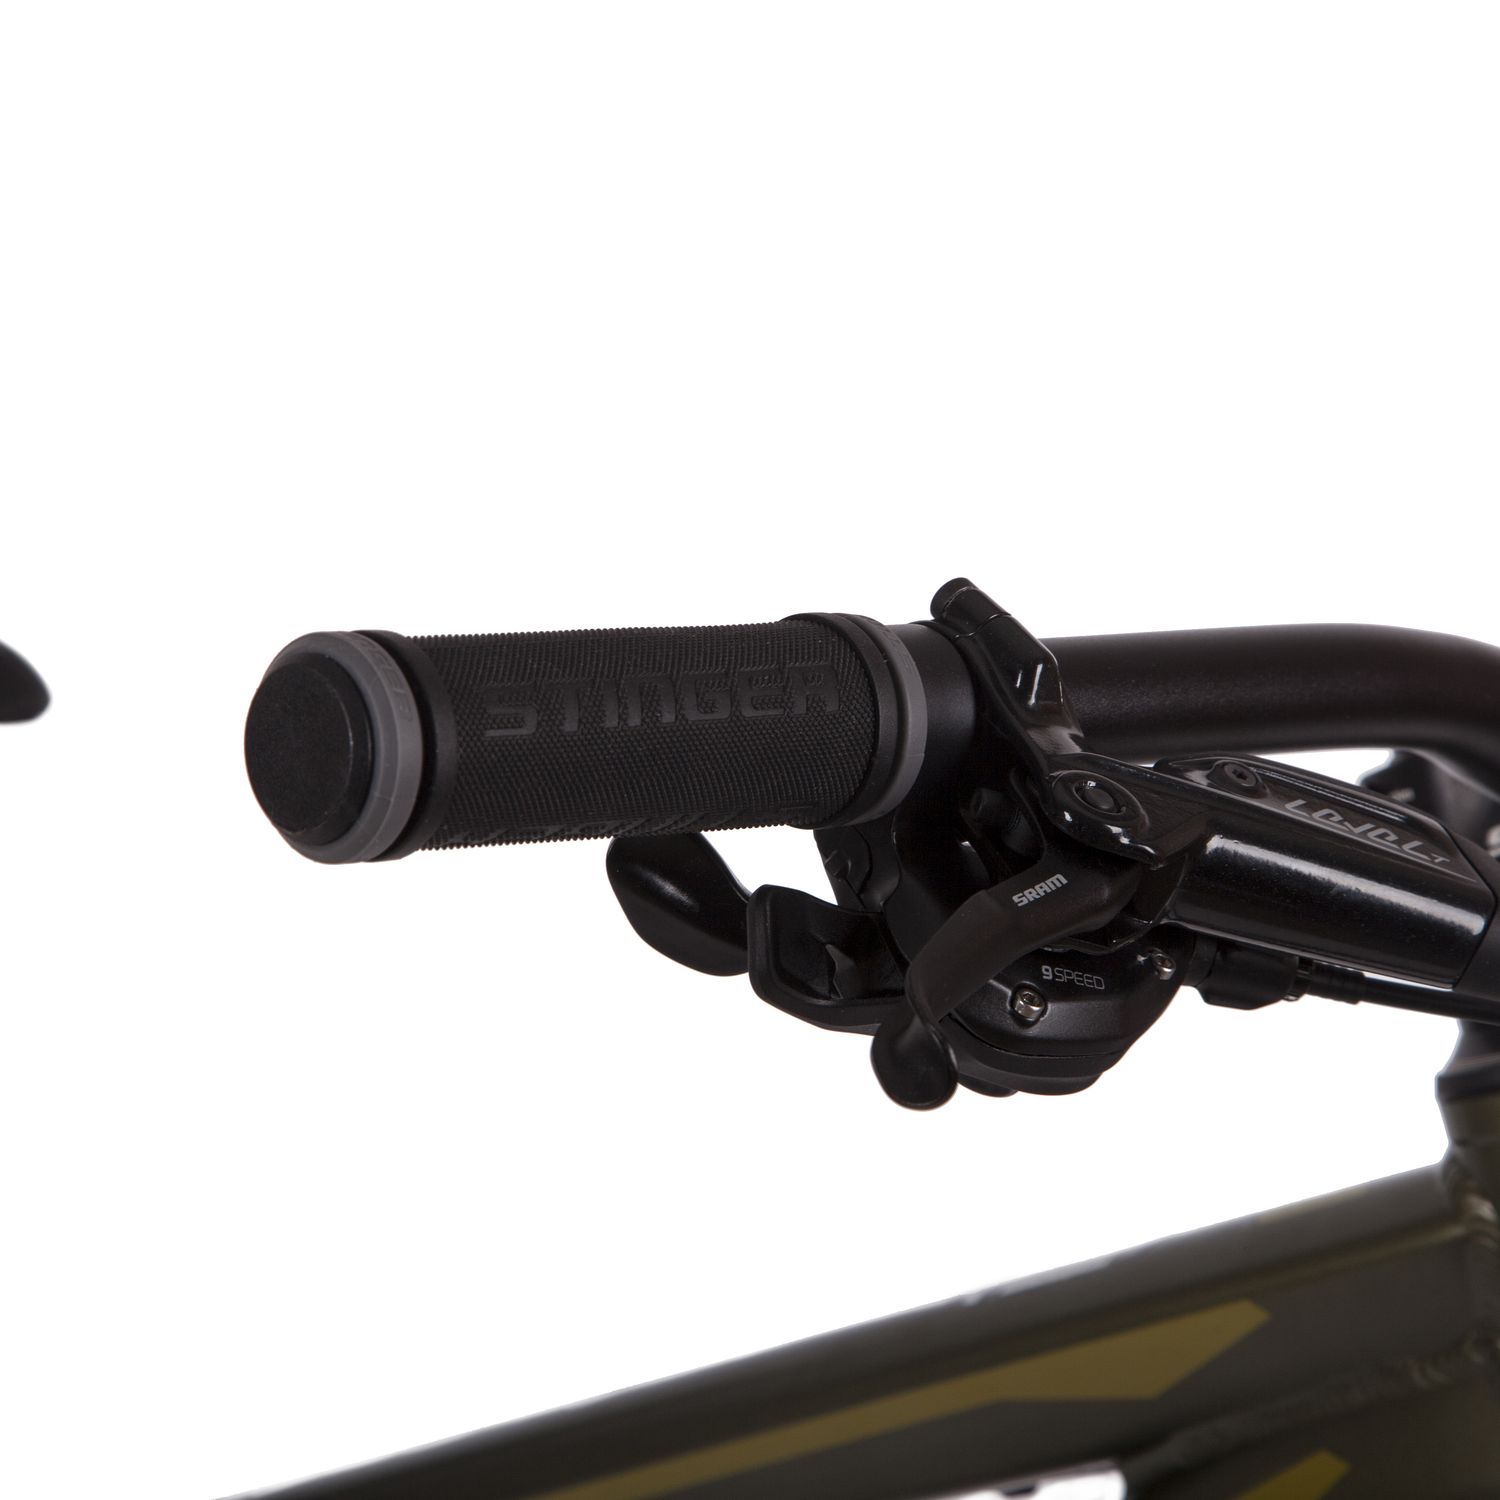 Горный велосипед Stinger Python Pro 29, год 2021, цвет Коричневый, ростовка 22